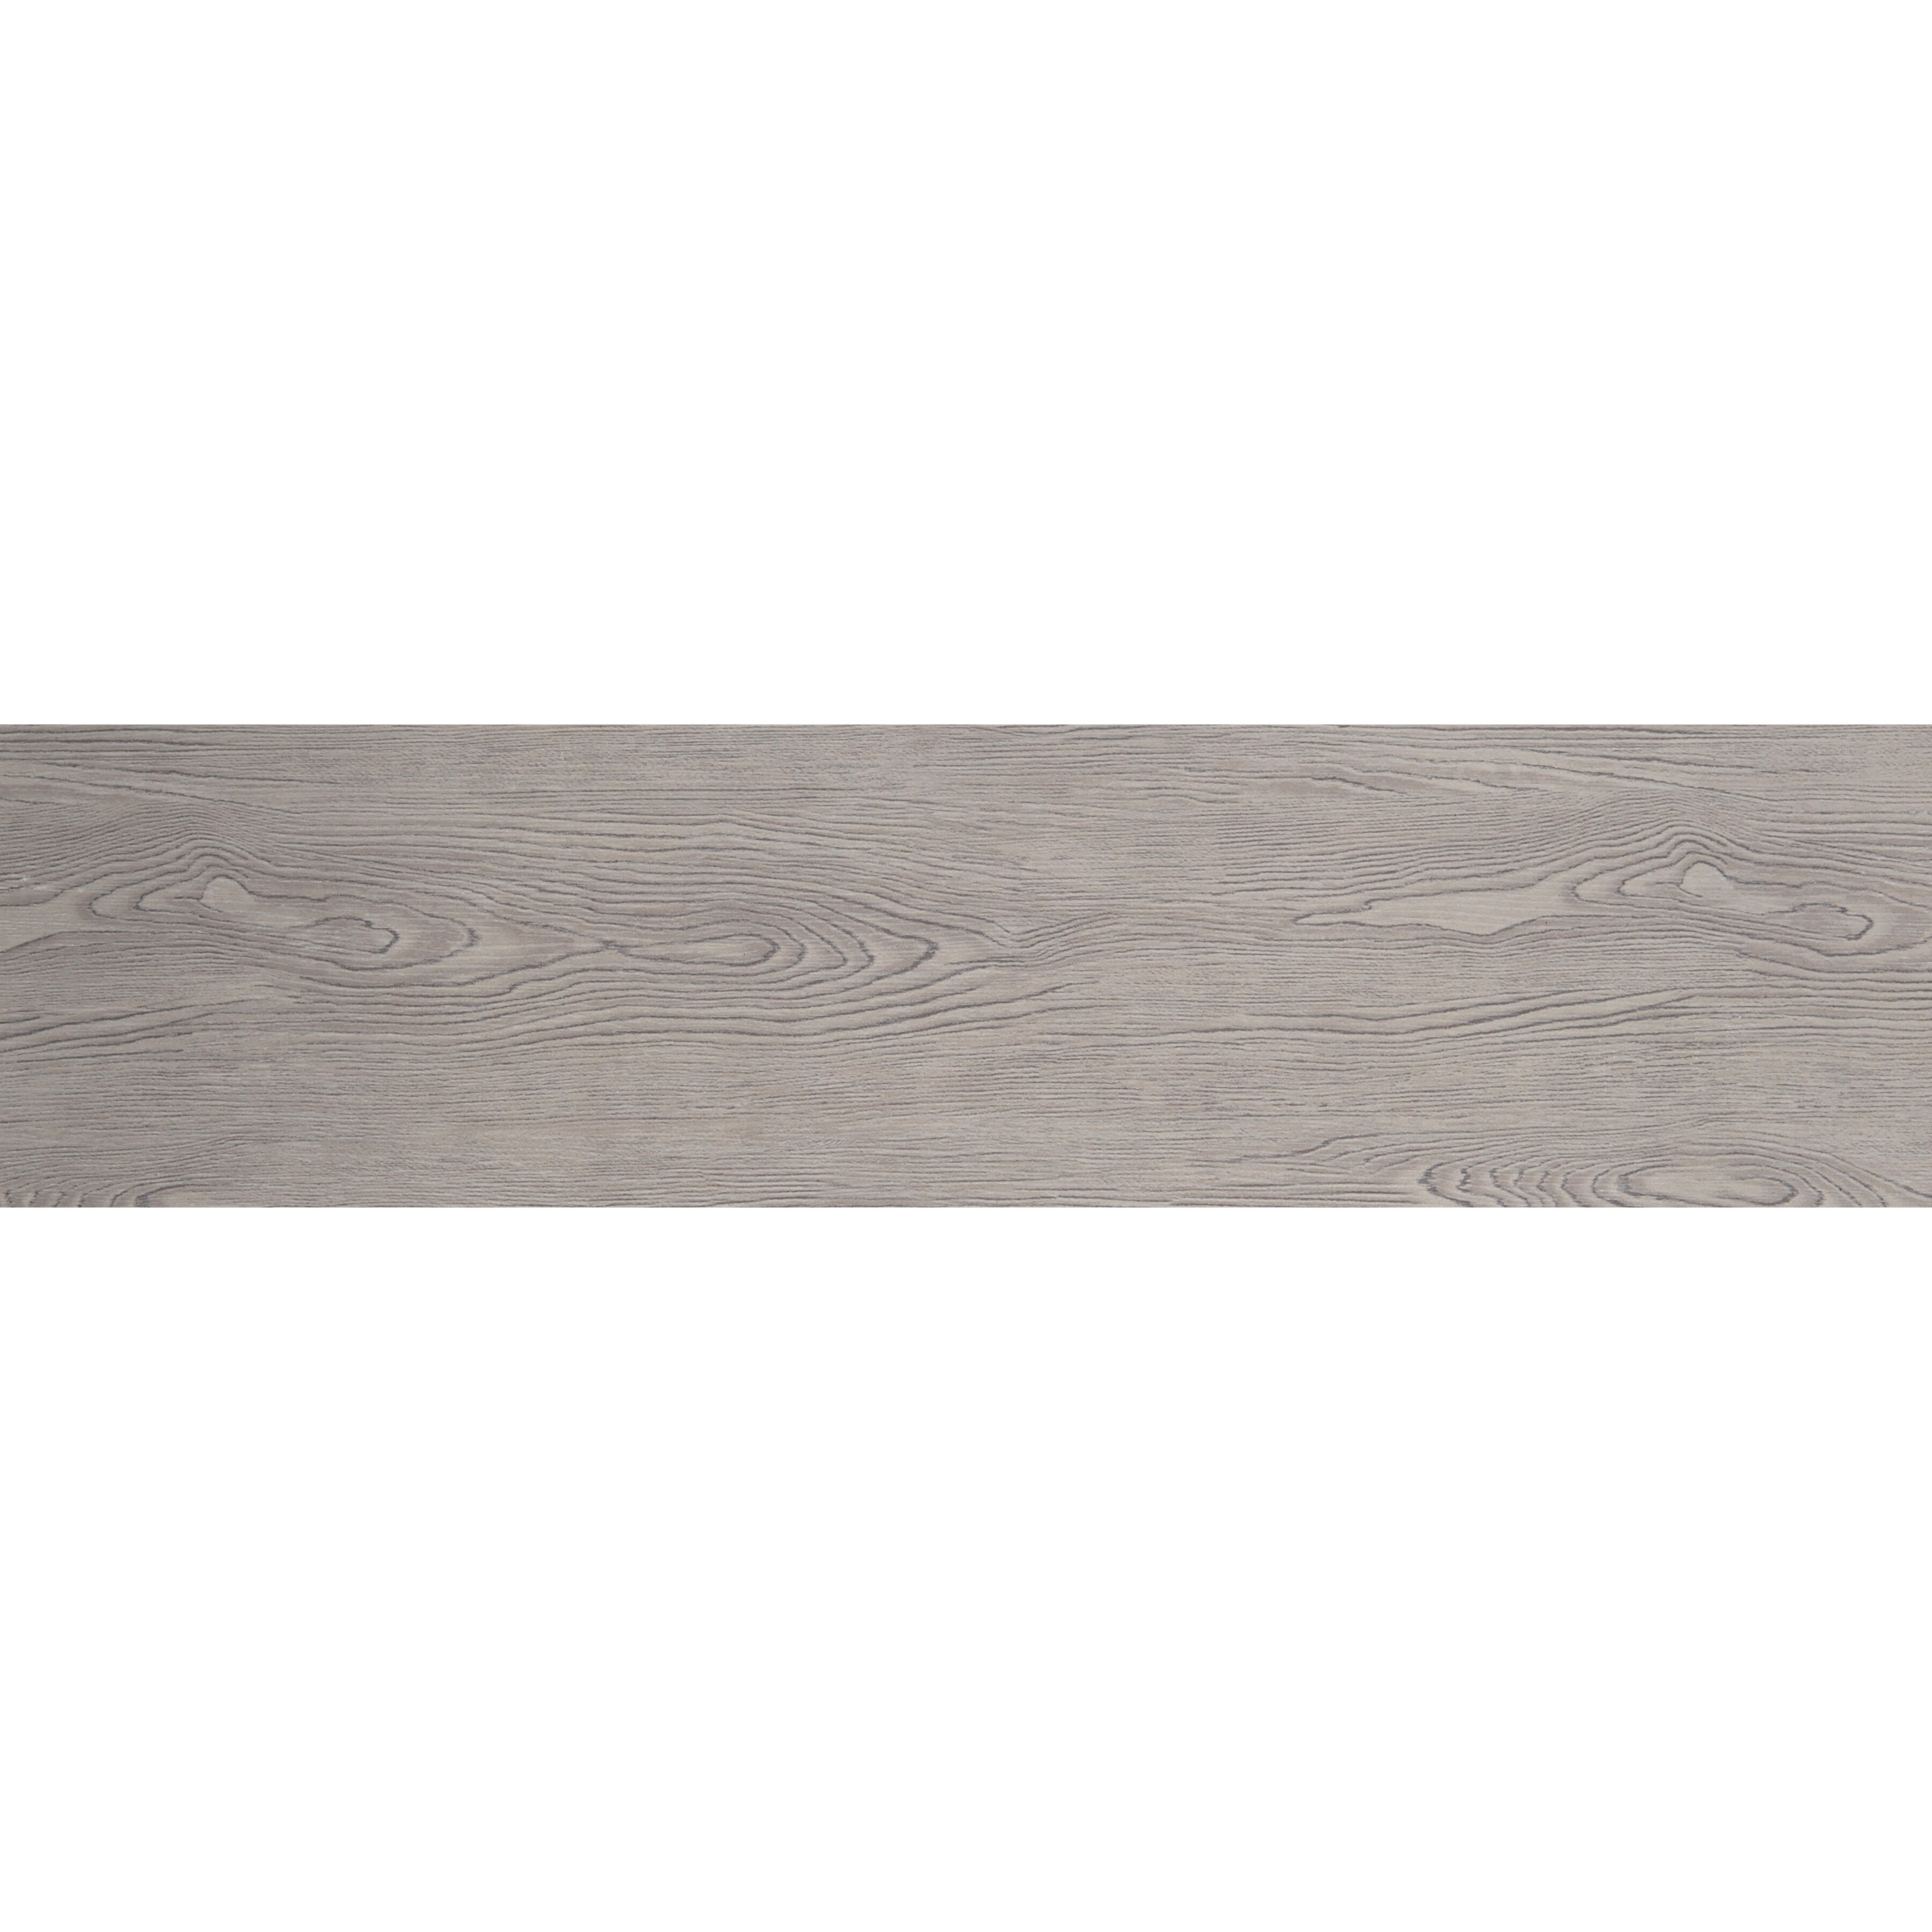 Emser Tile Alpine 6 x 36 Porcelain Wood Look Plank Tile in Foam F72ALPIFO0636